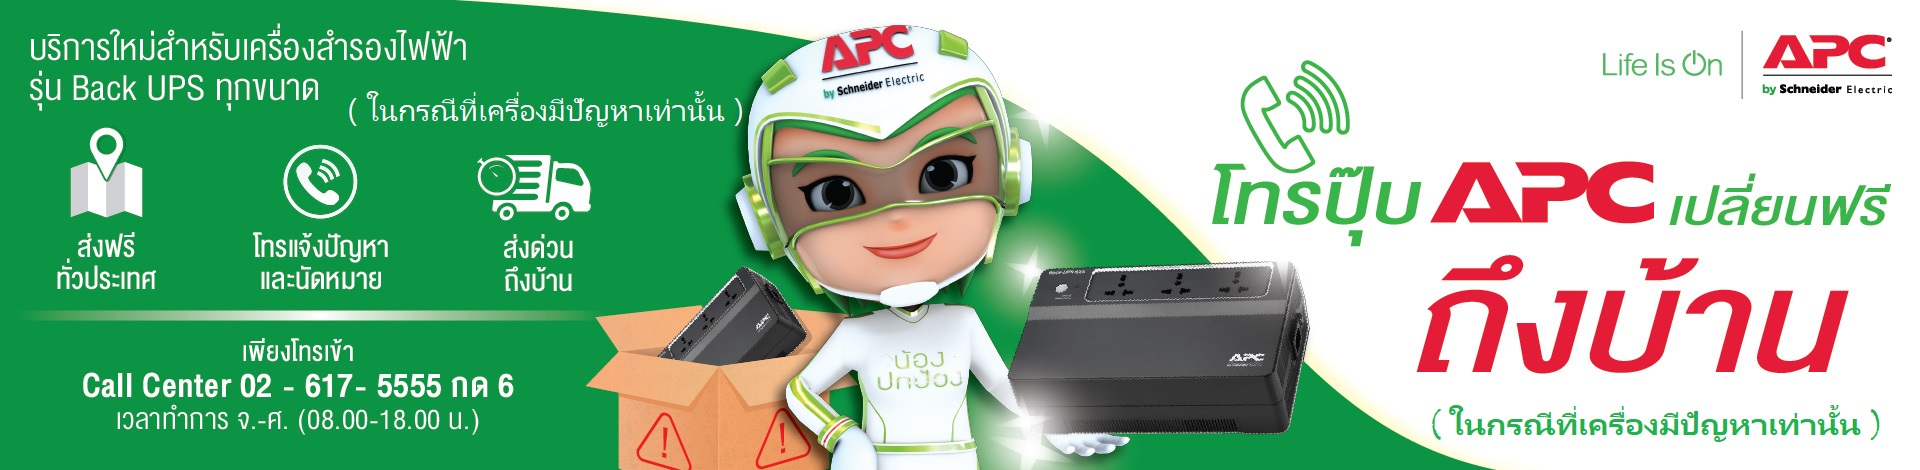 apc service - apc เปลี่ยนฟรี ถึงบ้านในกรณีที่เครื่องมีปัญหา